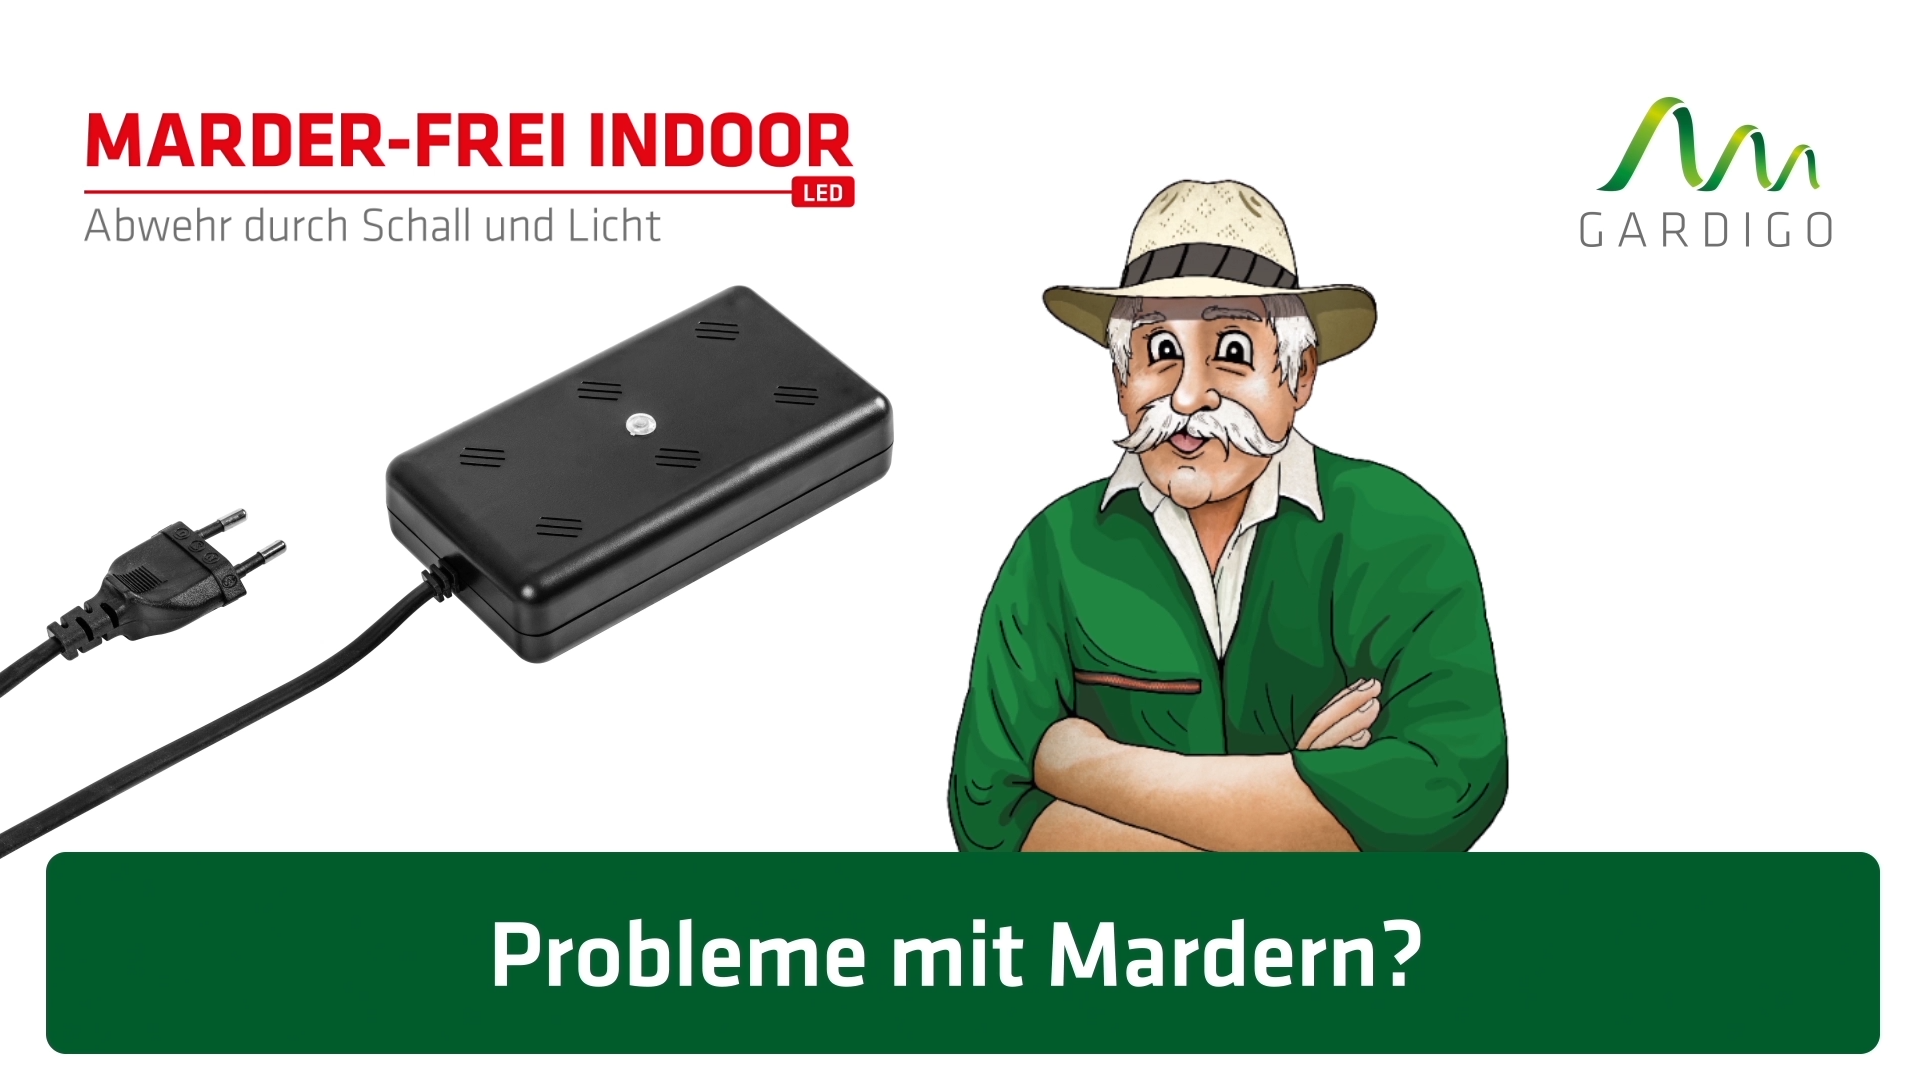 Marder-Frei Indoor LED, Marderschreck für die Steckdose